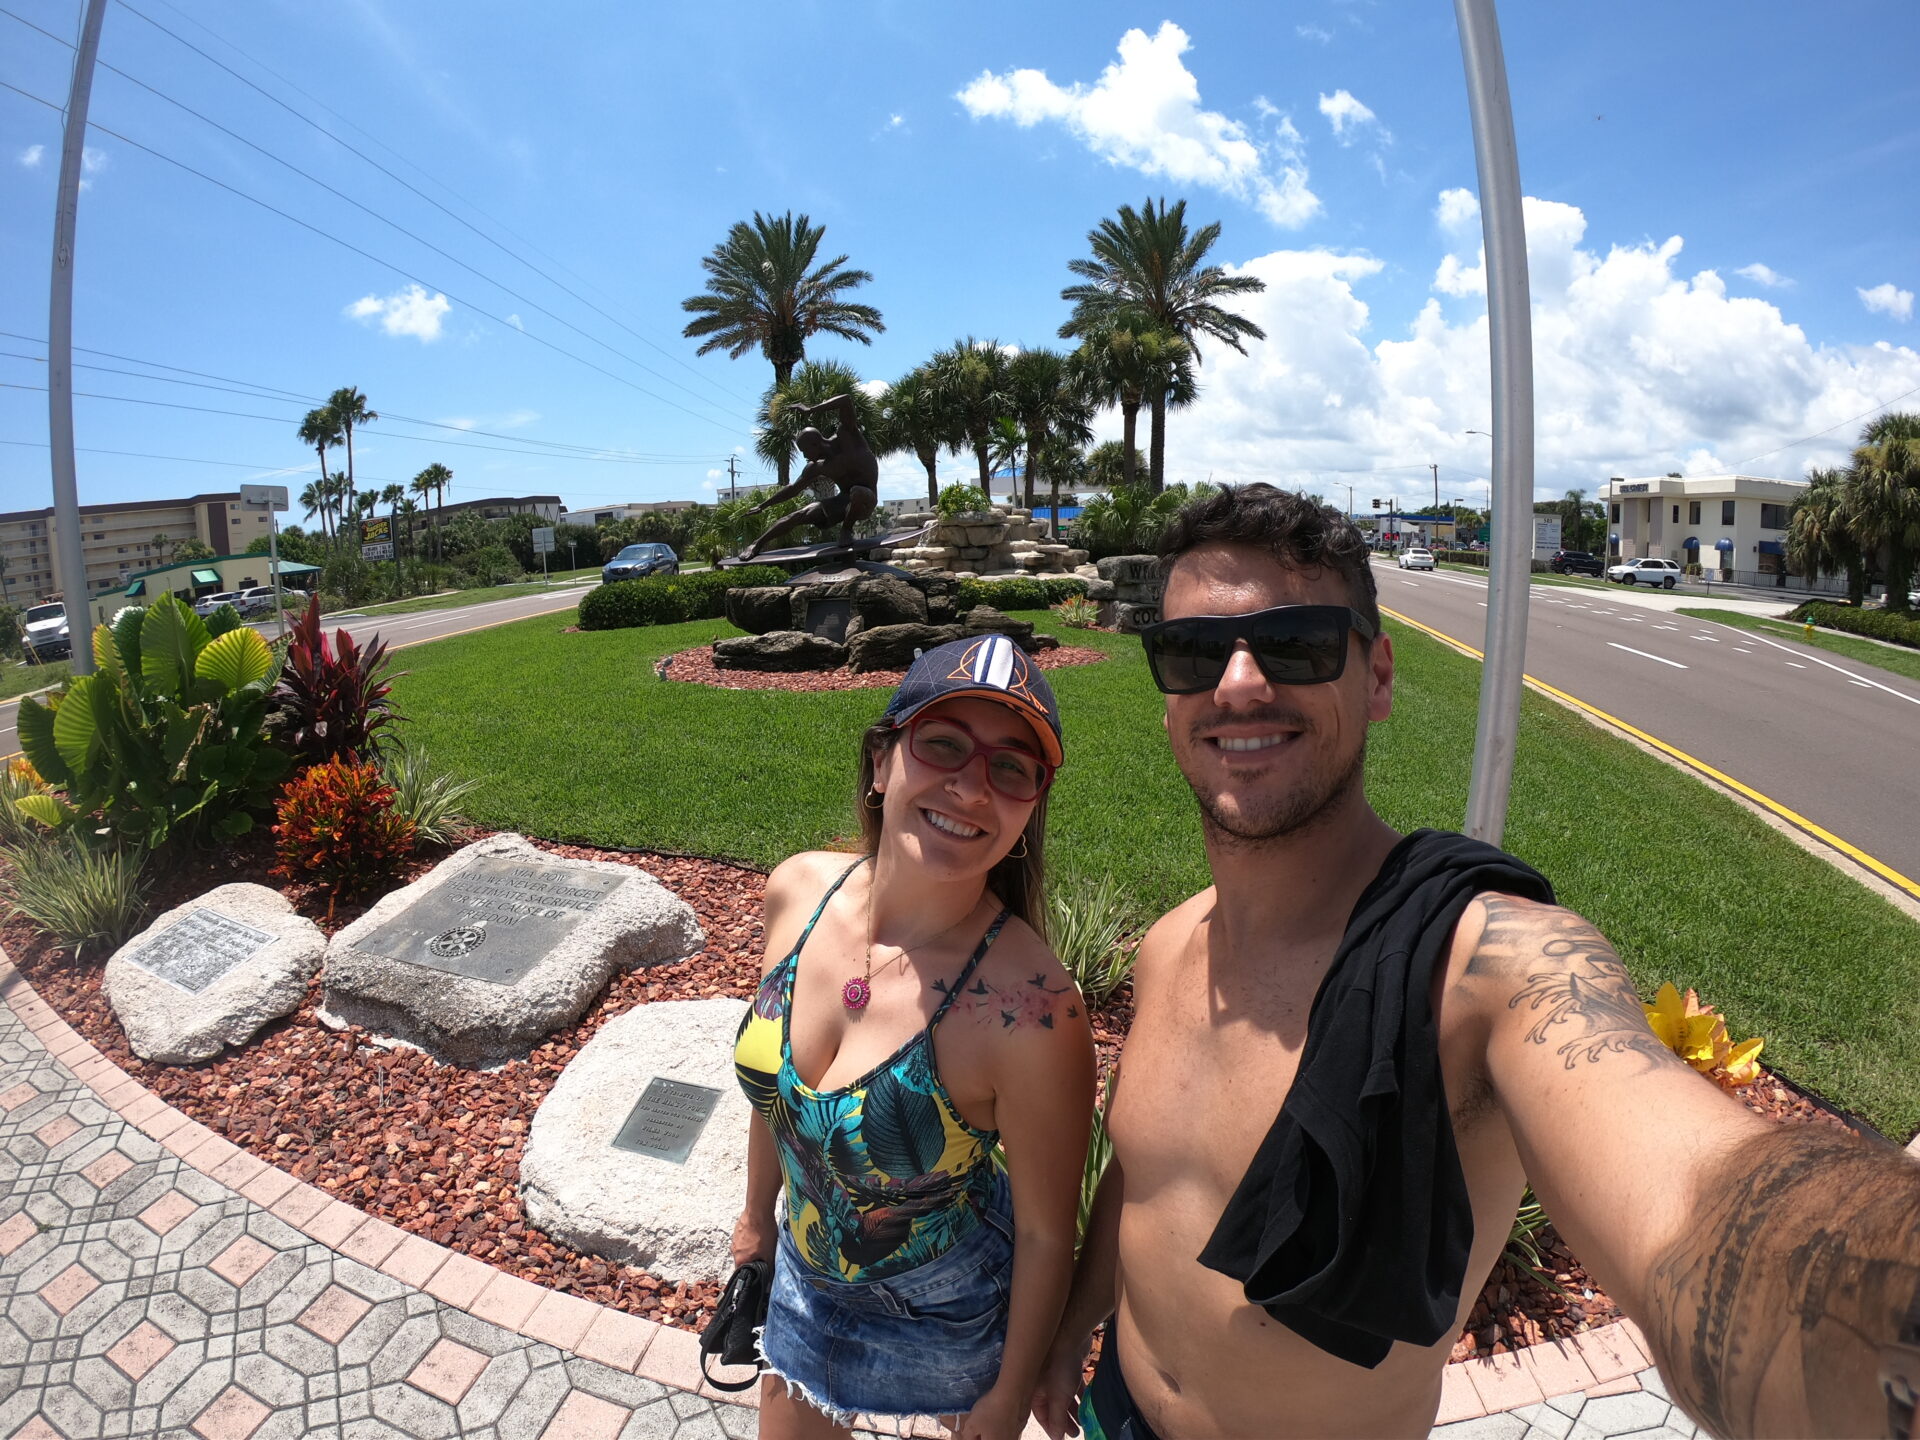 cocoa beach - Florida